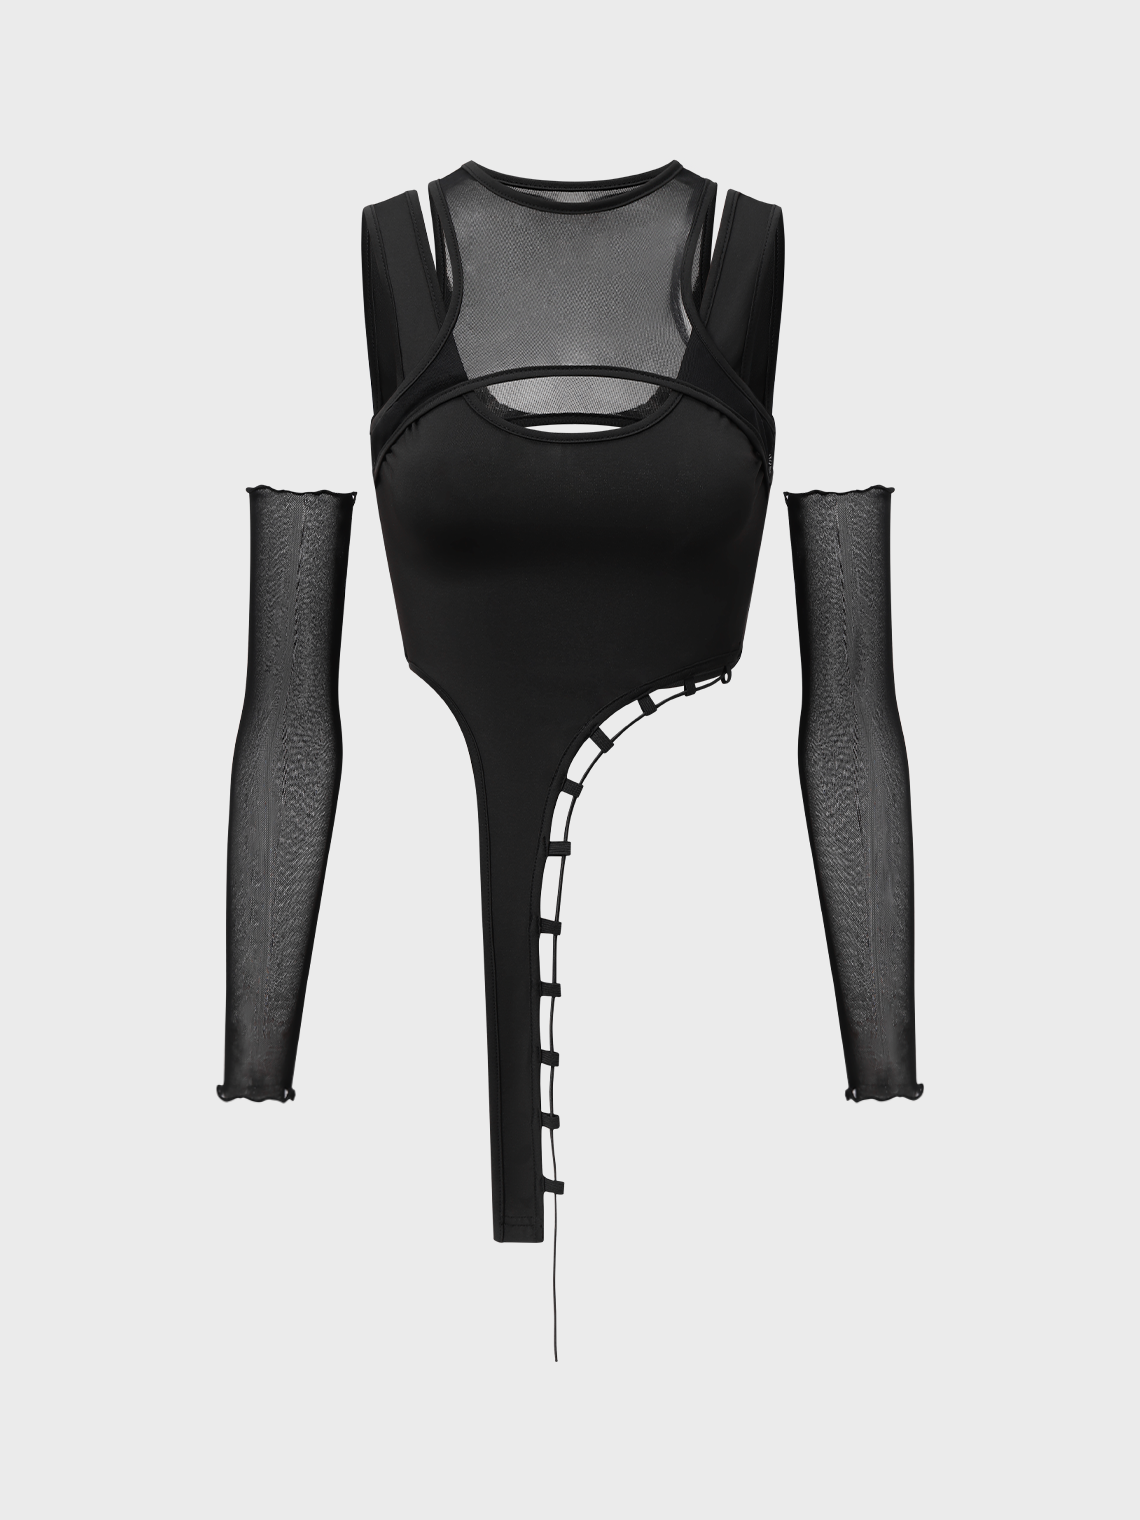 【Final Sale】Edgy Black Mesh Asymmetrical Design Tiered Design Cyberpunk Top Women Top